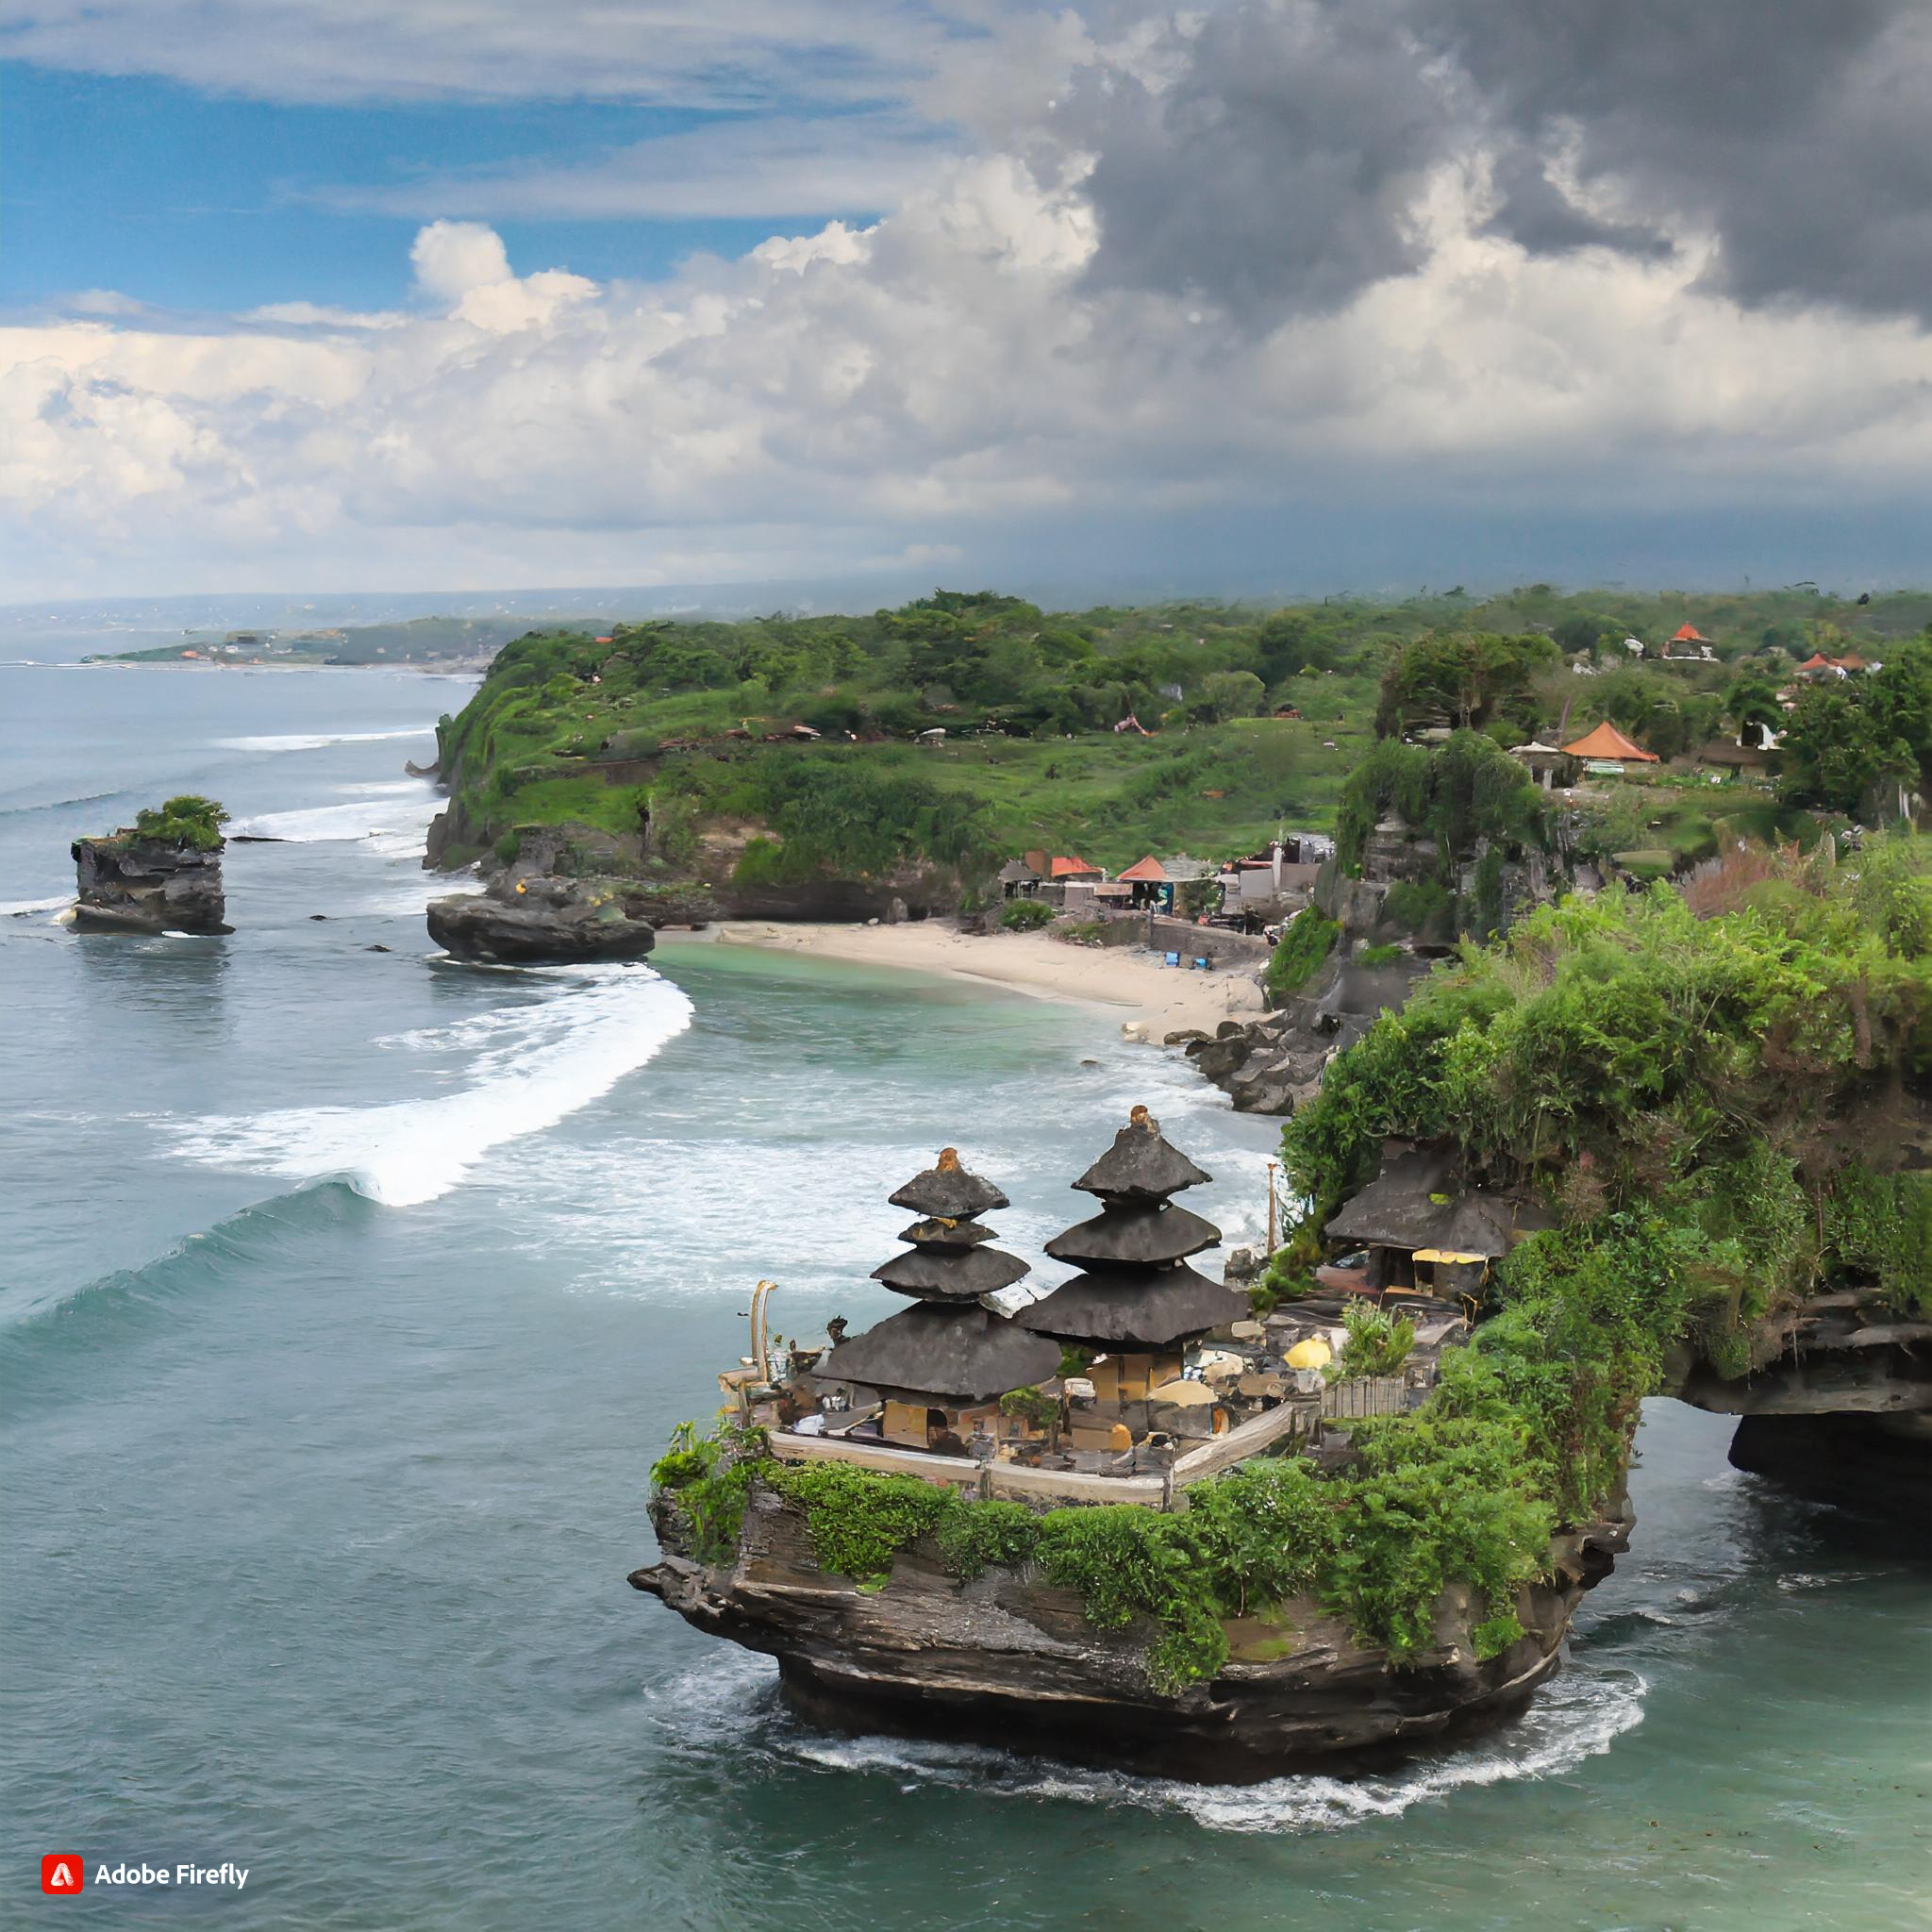  Bali views